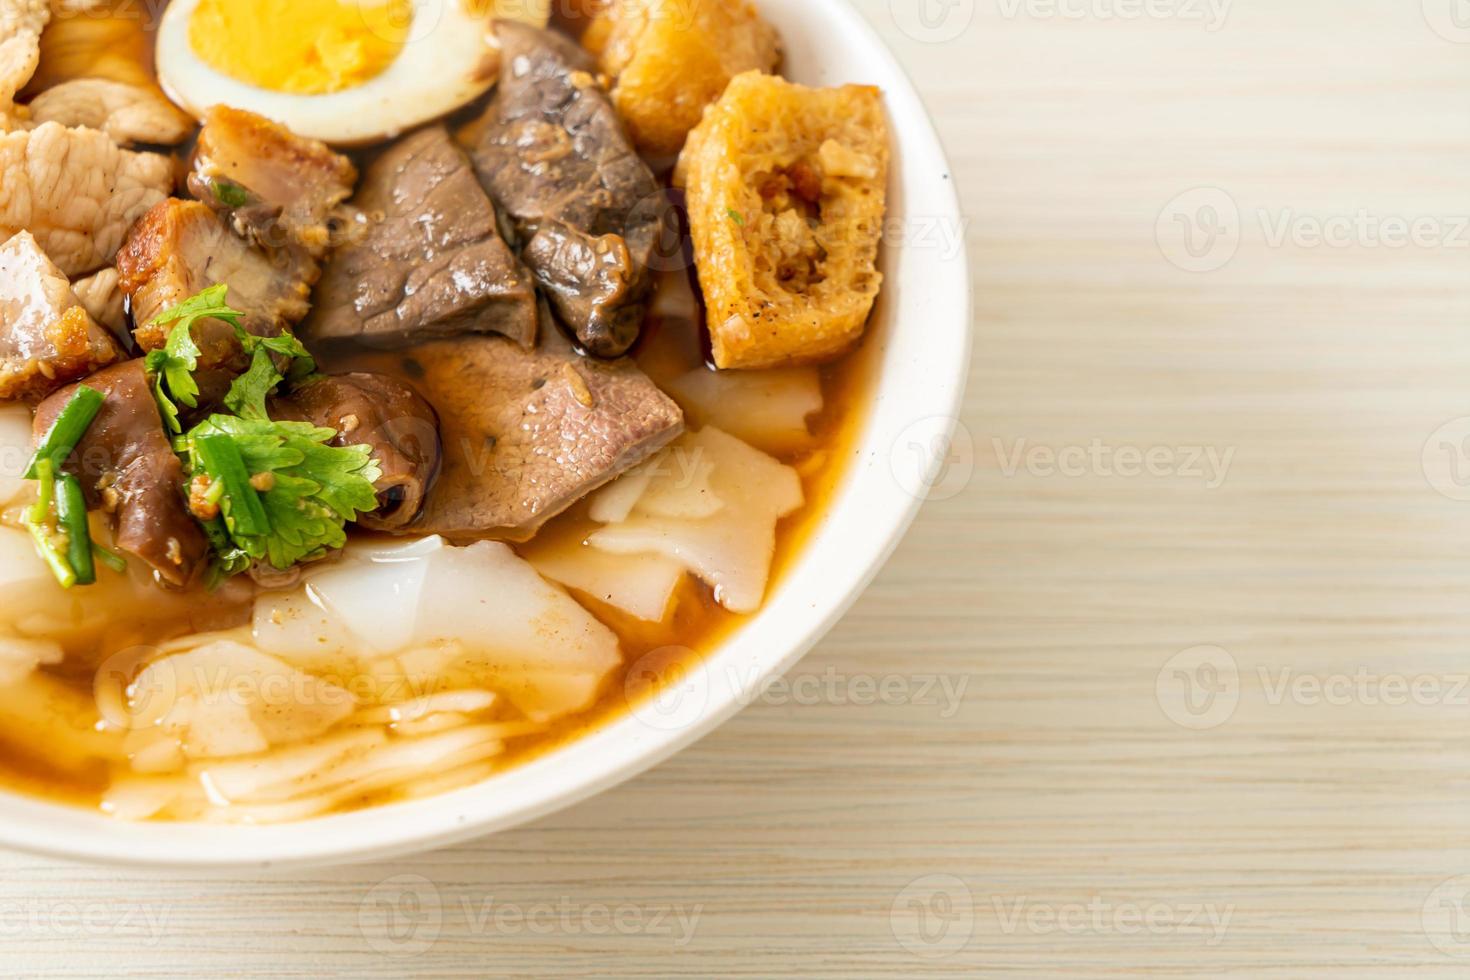 pasta av rismjöl eller kokt kinesisk pastatorg med fläsk i brun soppa - asiatisk matstil foto